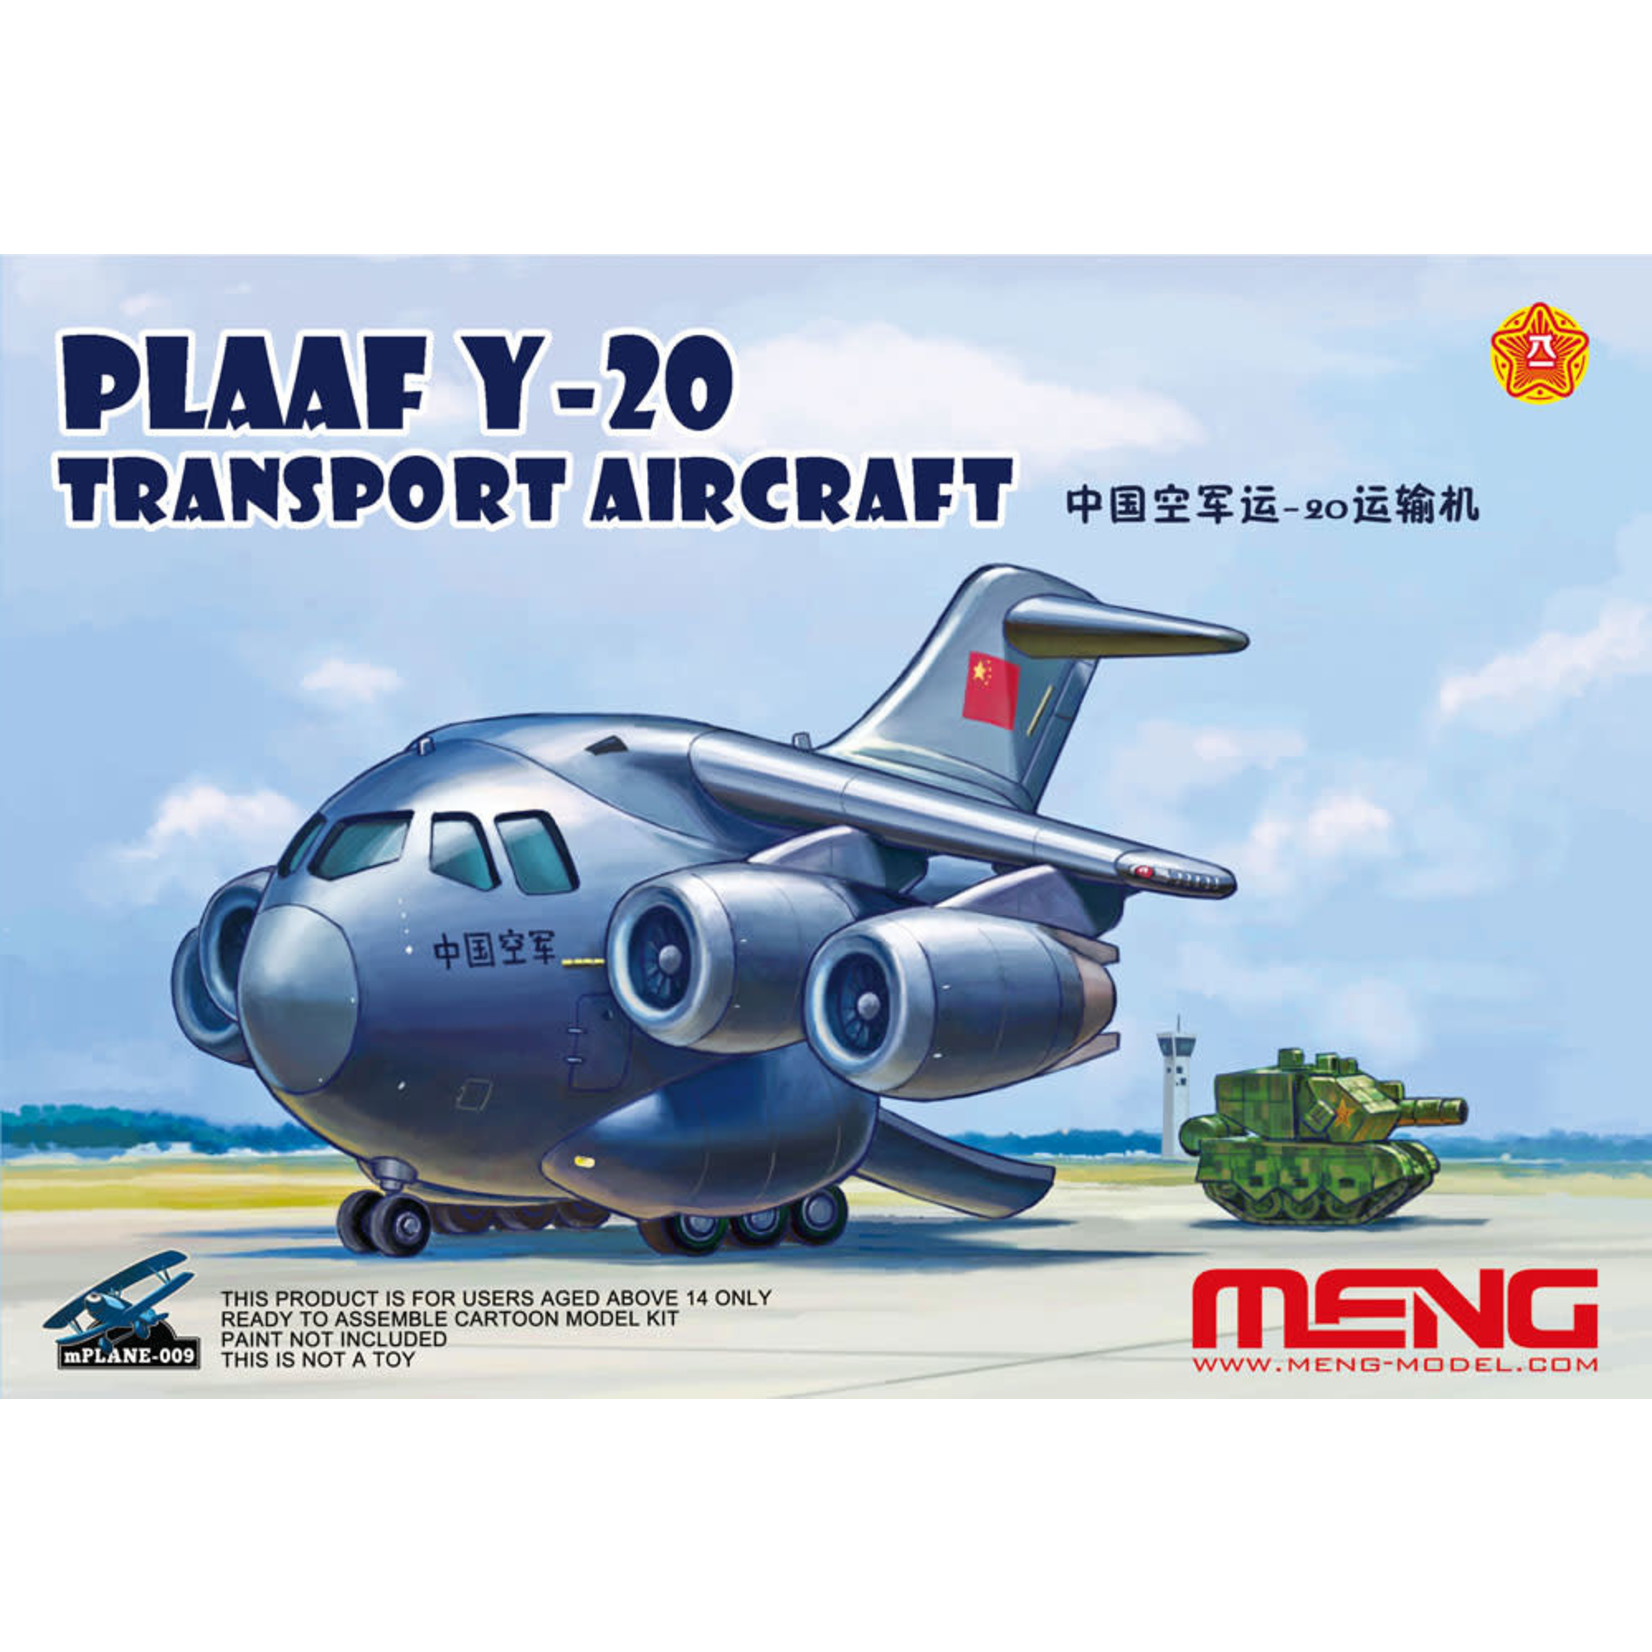 MENG MENGMP009: Y-20 Transport Aircraft